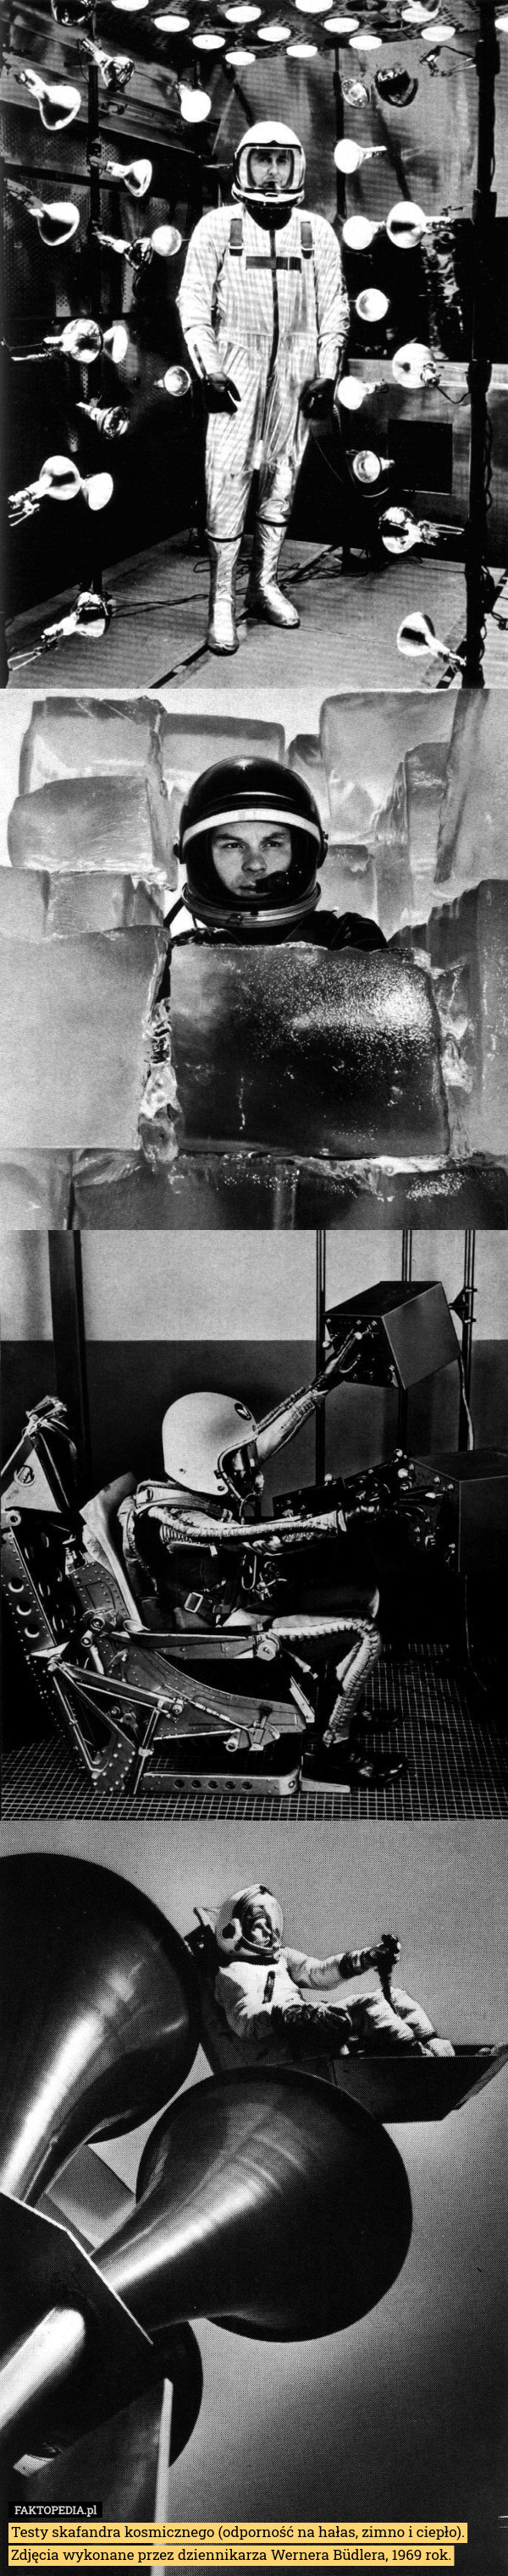 Testy skafandra kosmicznego (odporność na hałas, zimno i ciepło). Zdjęcia wykonane przez dziennikarza Wernera Büdlera, 1969 rok. 